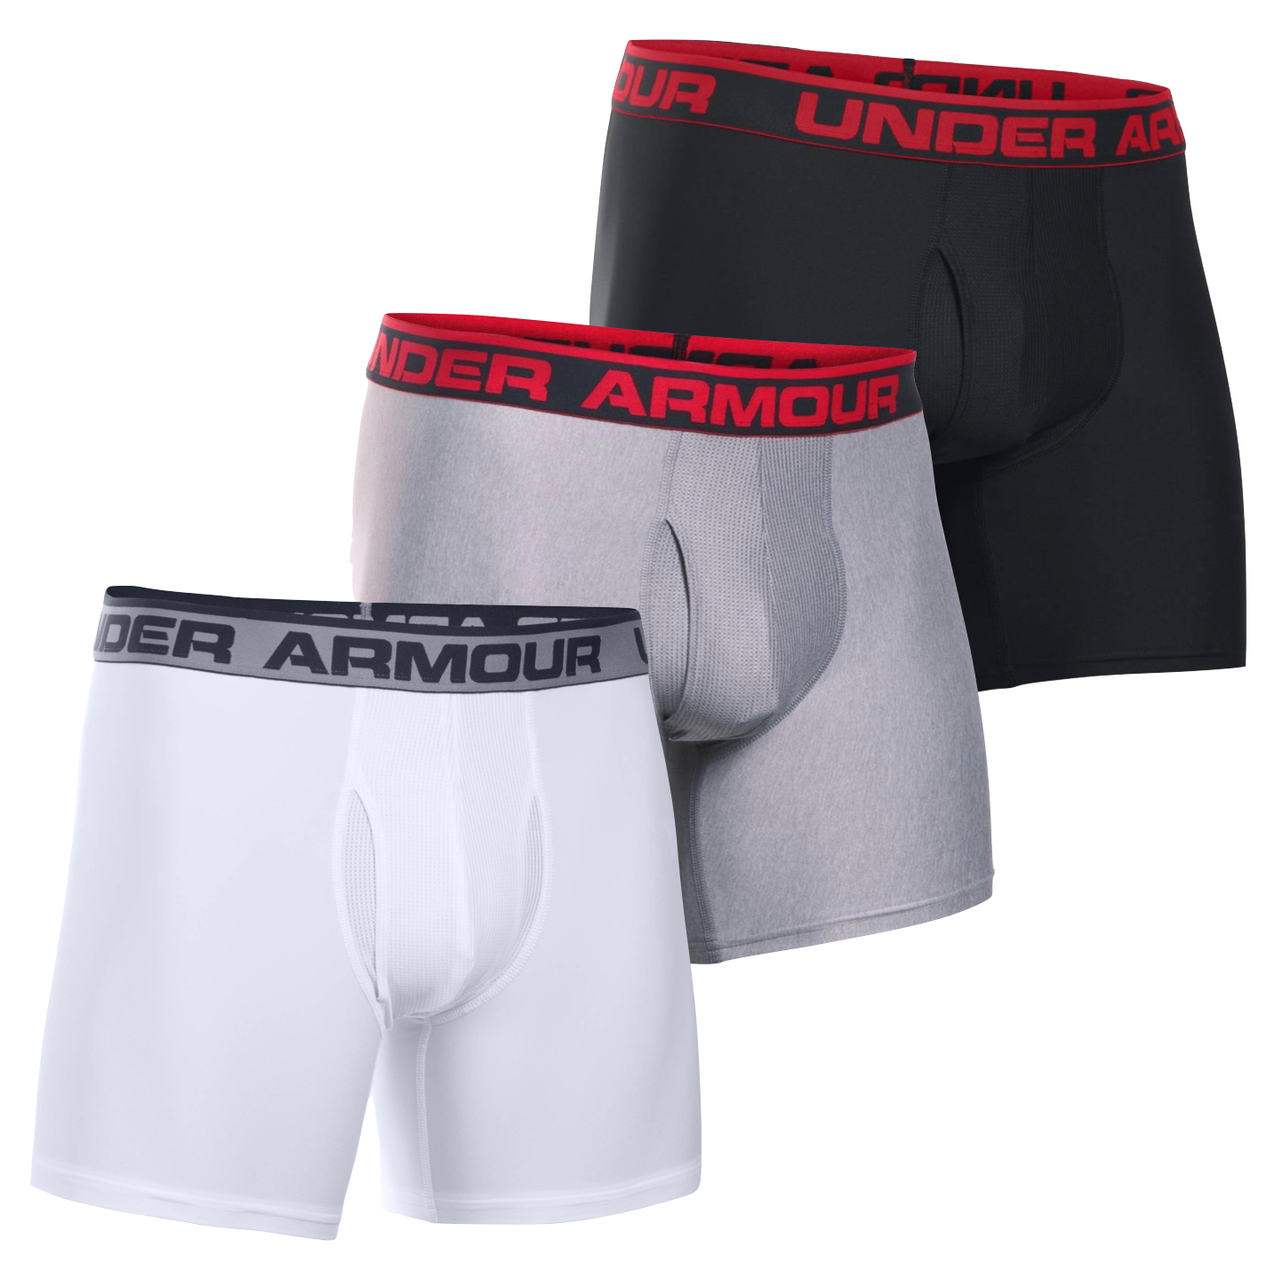 4 Under Armour Boxer Briefs Mens XL Gray 6 Inch Underwear 1277238